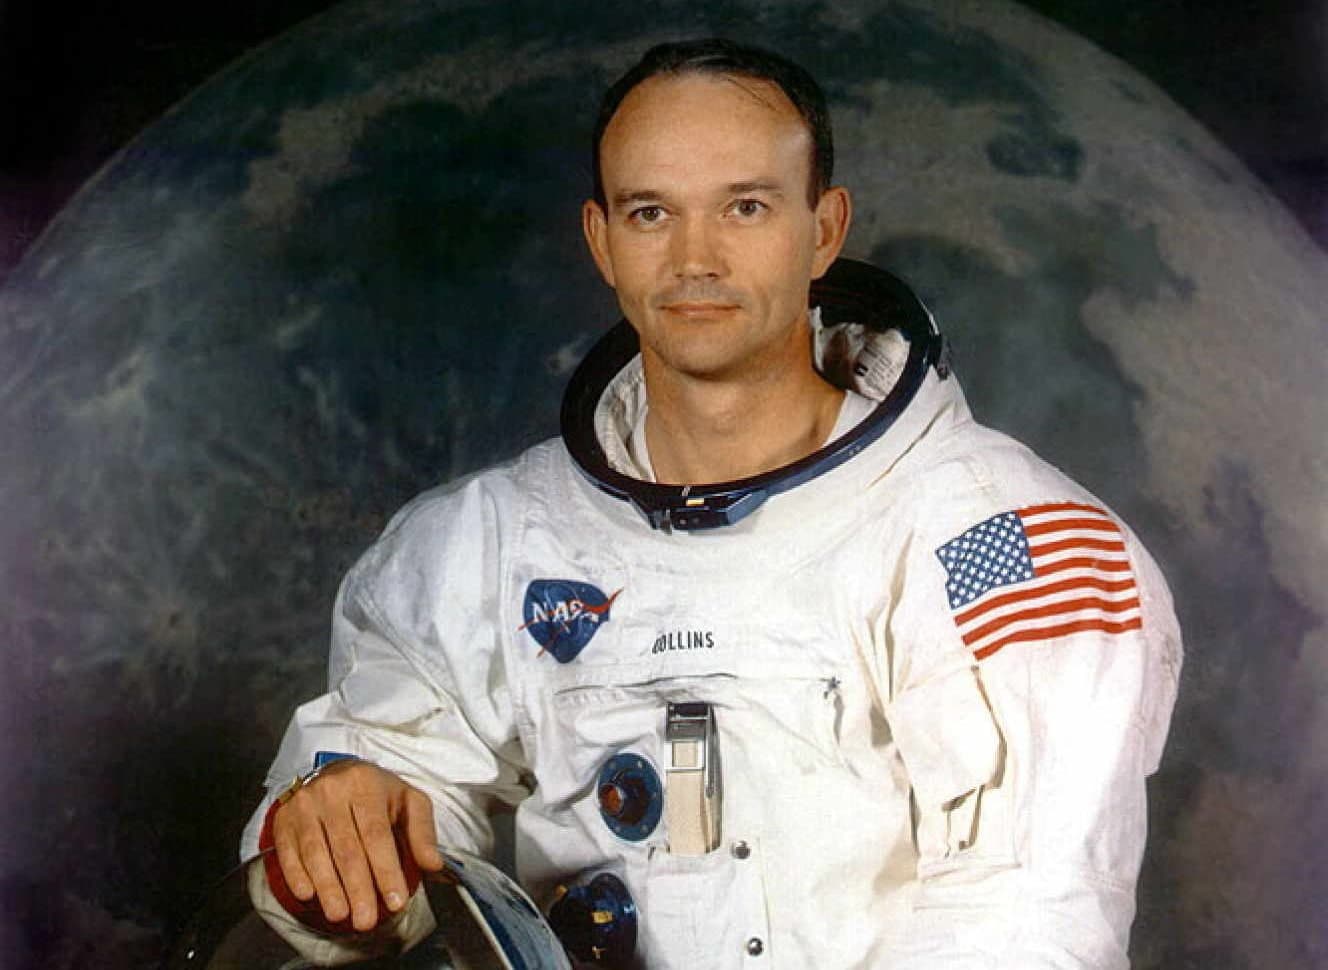 Michael Collins, l’un des astronautes d’Apollo 11, est mort à l’âge de 90 ans